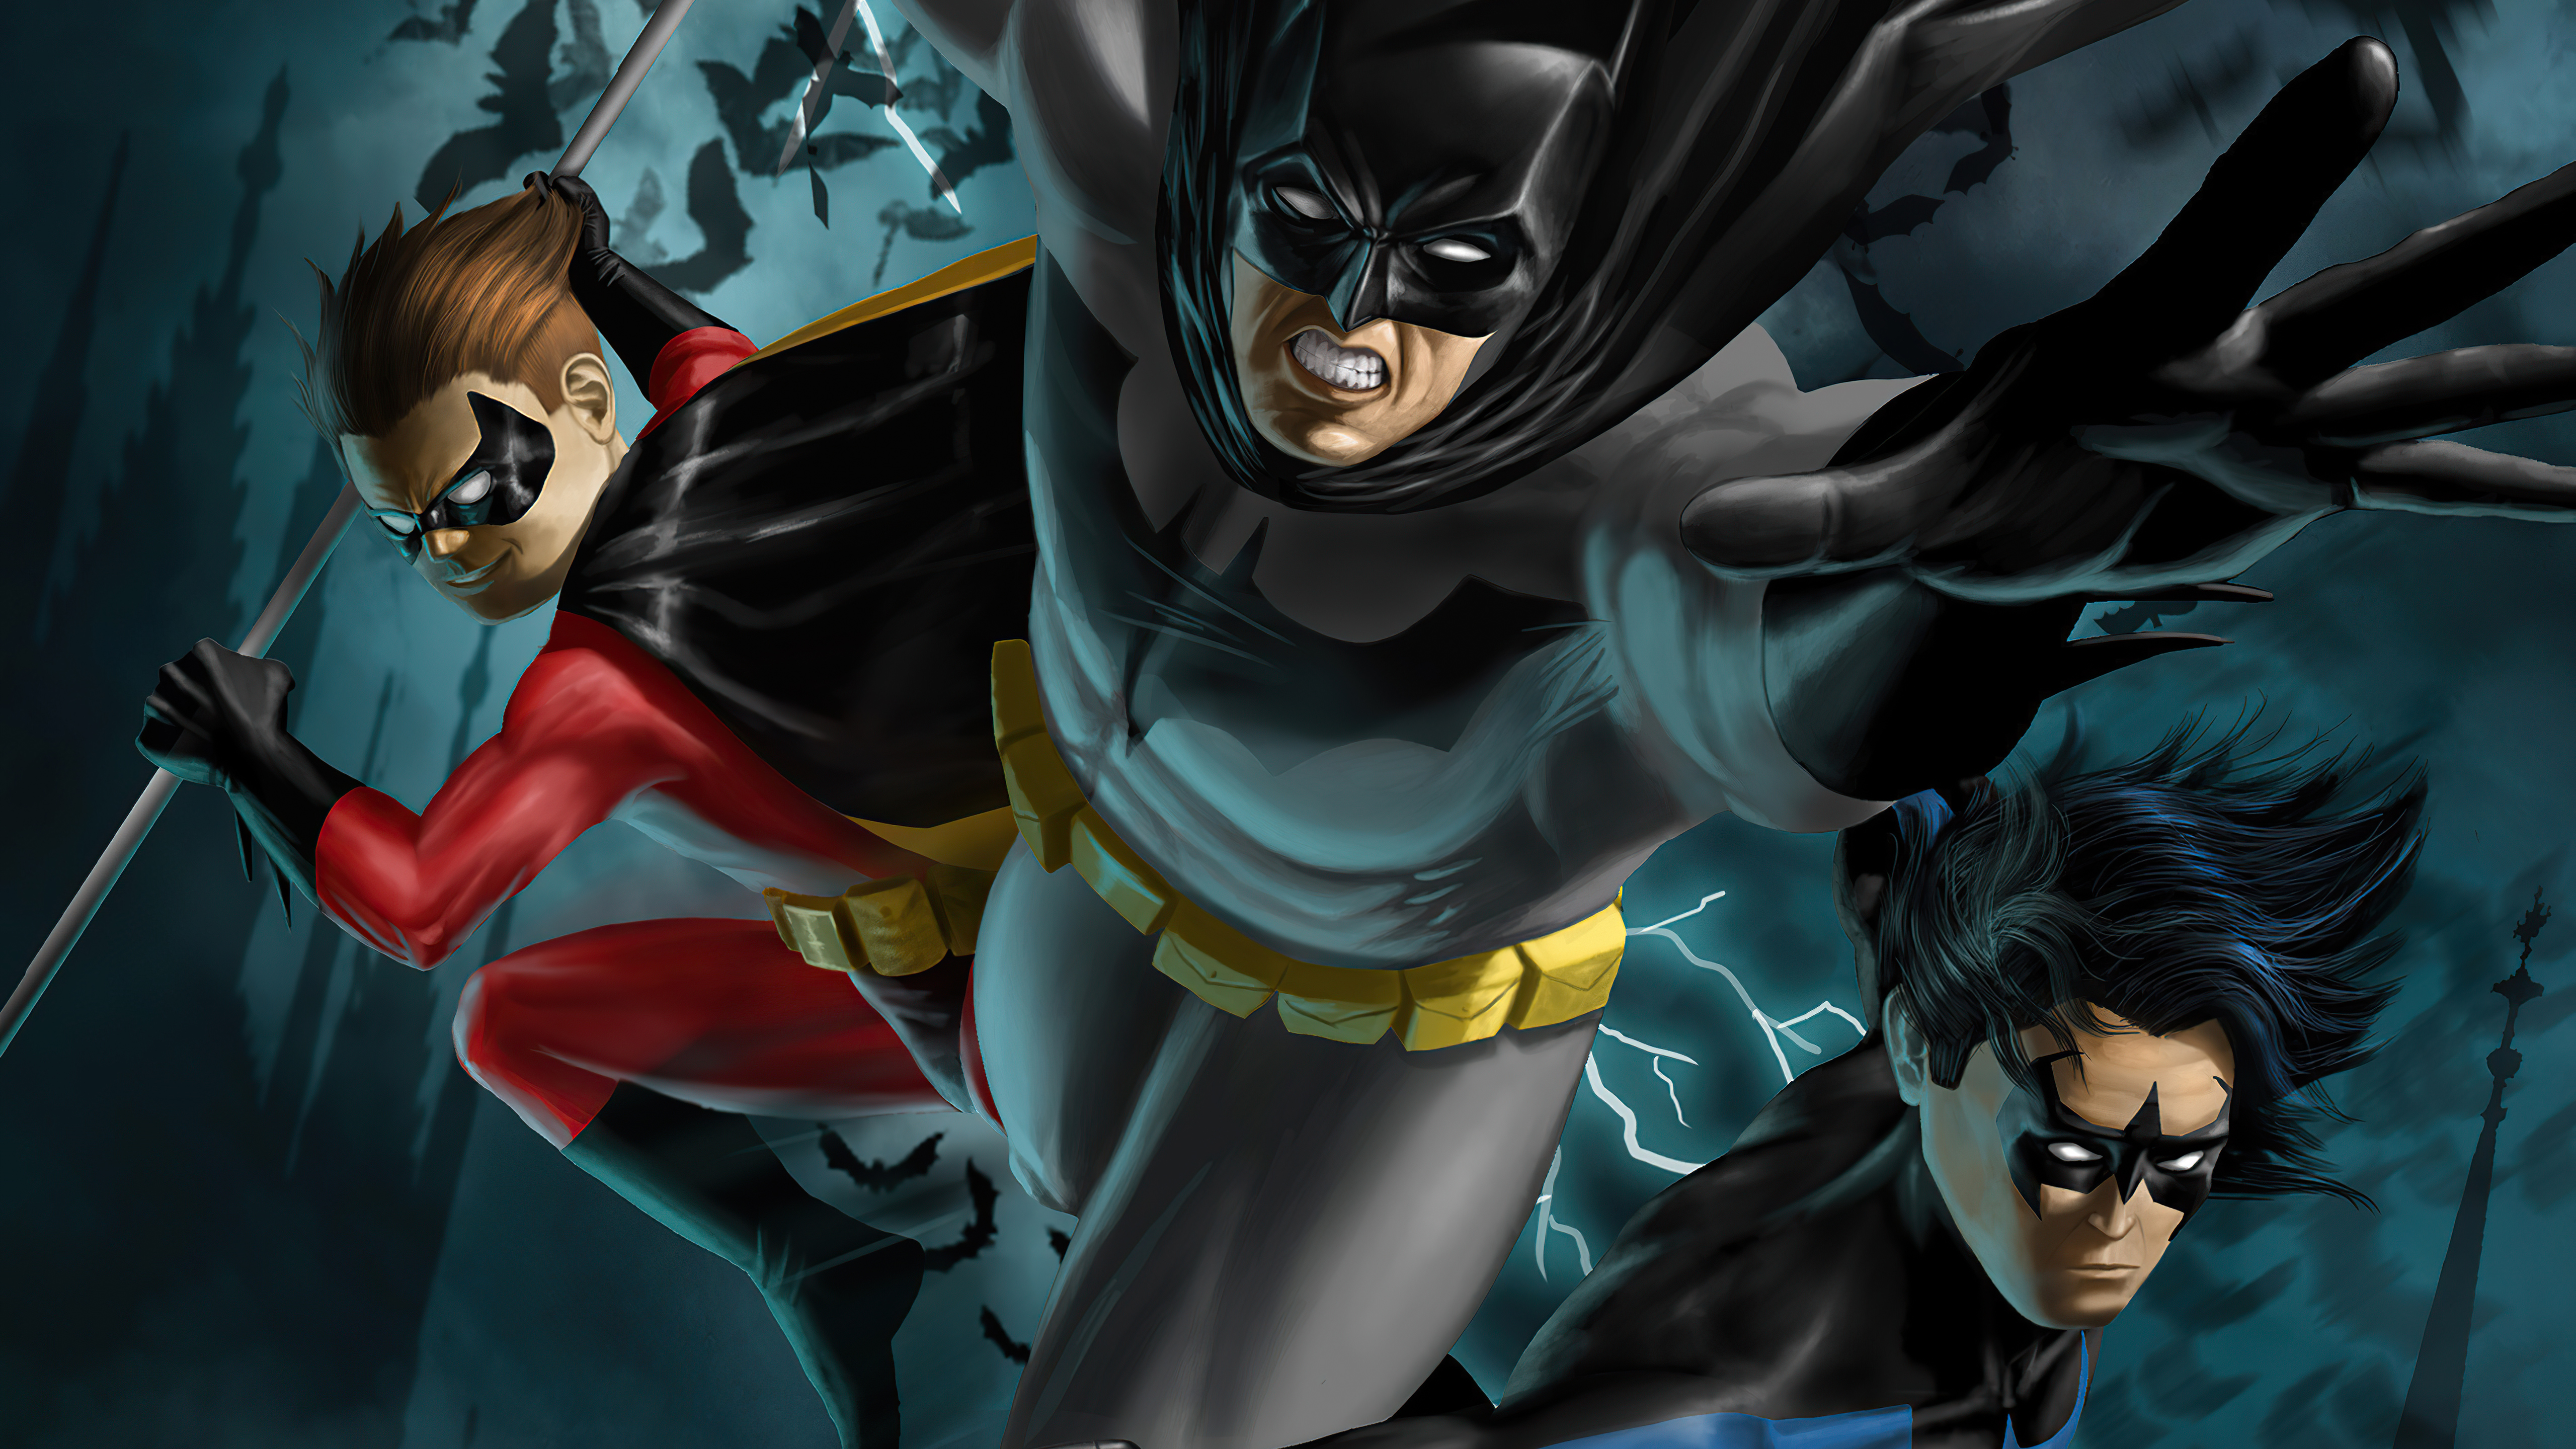 Скачать обои бесплатно Комиксы, Бэтмен, Комиксы Dc, Найтвинг, Робин (Комиксы Dc), Дик Грейсон картинка на рабочий стол ПК